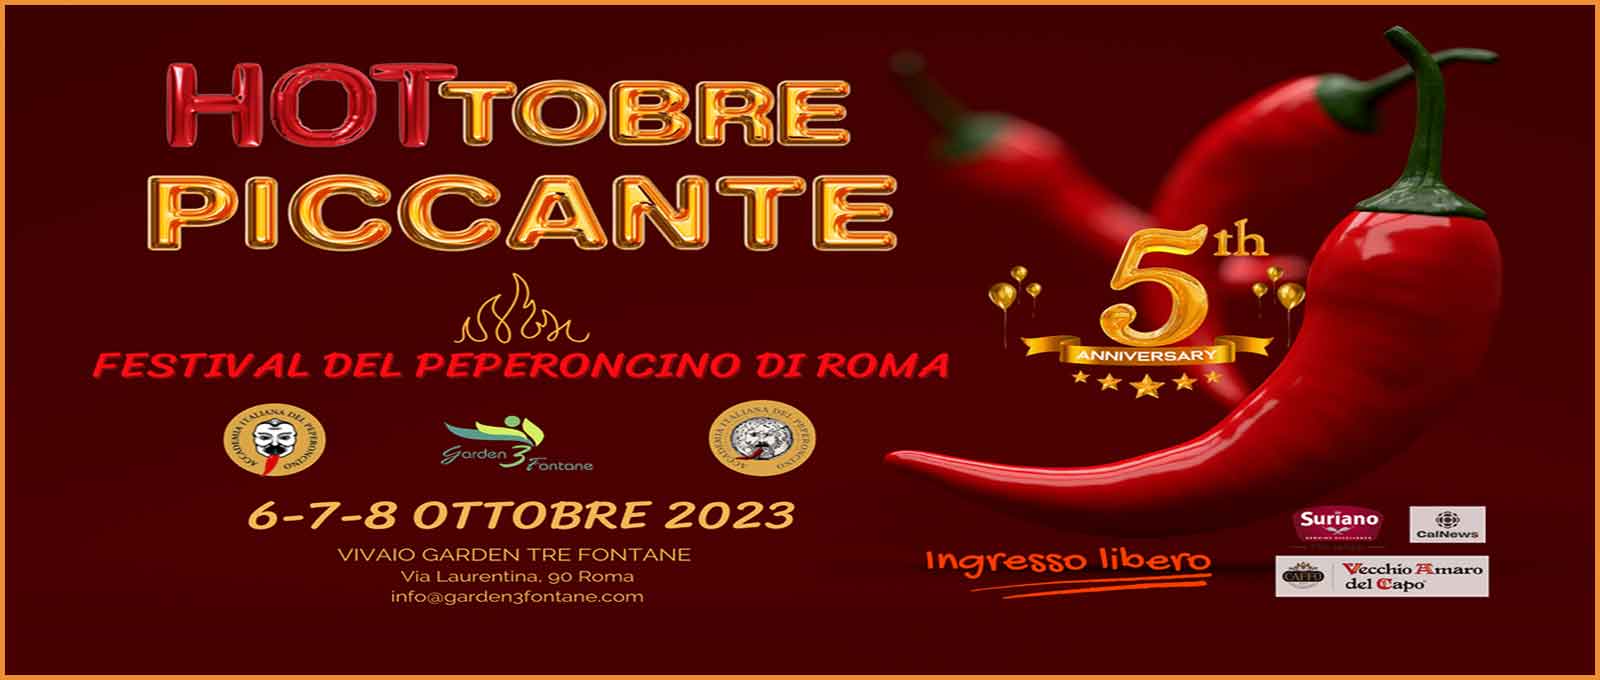 “HOTtobre Piccante” il Peperoncino Festival di Roma.